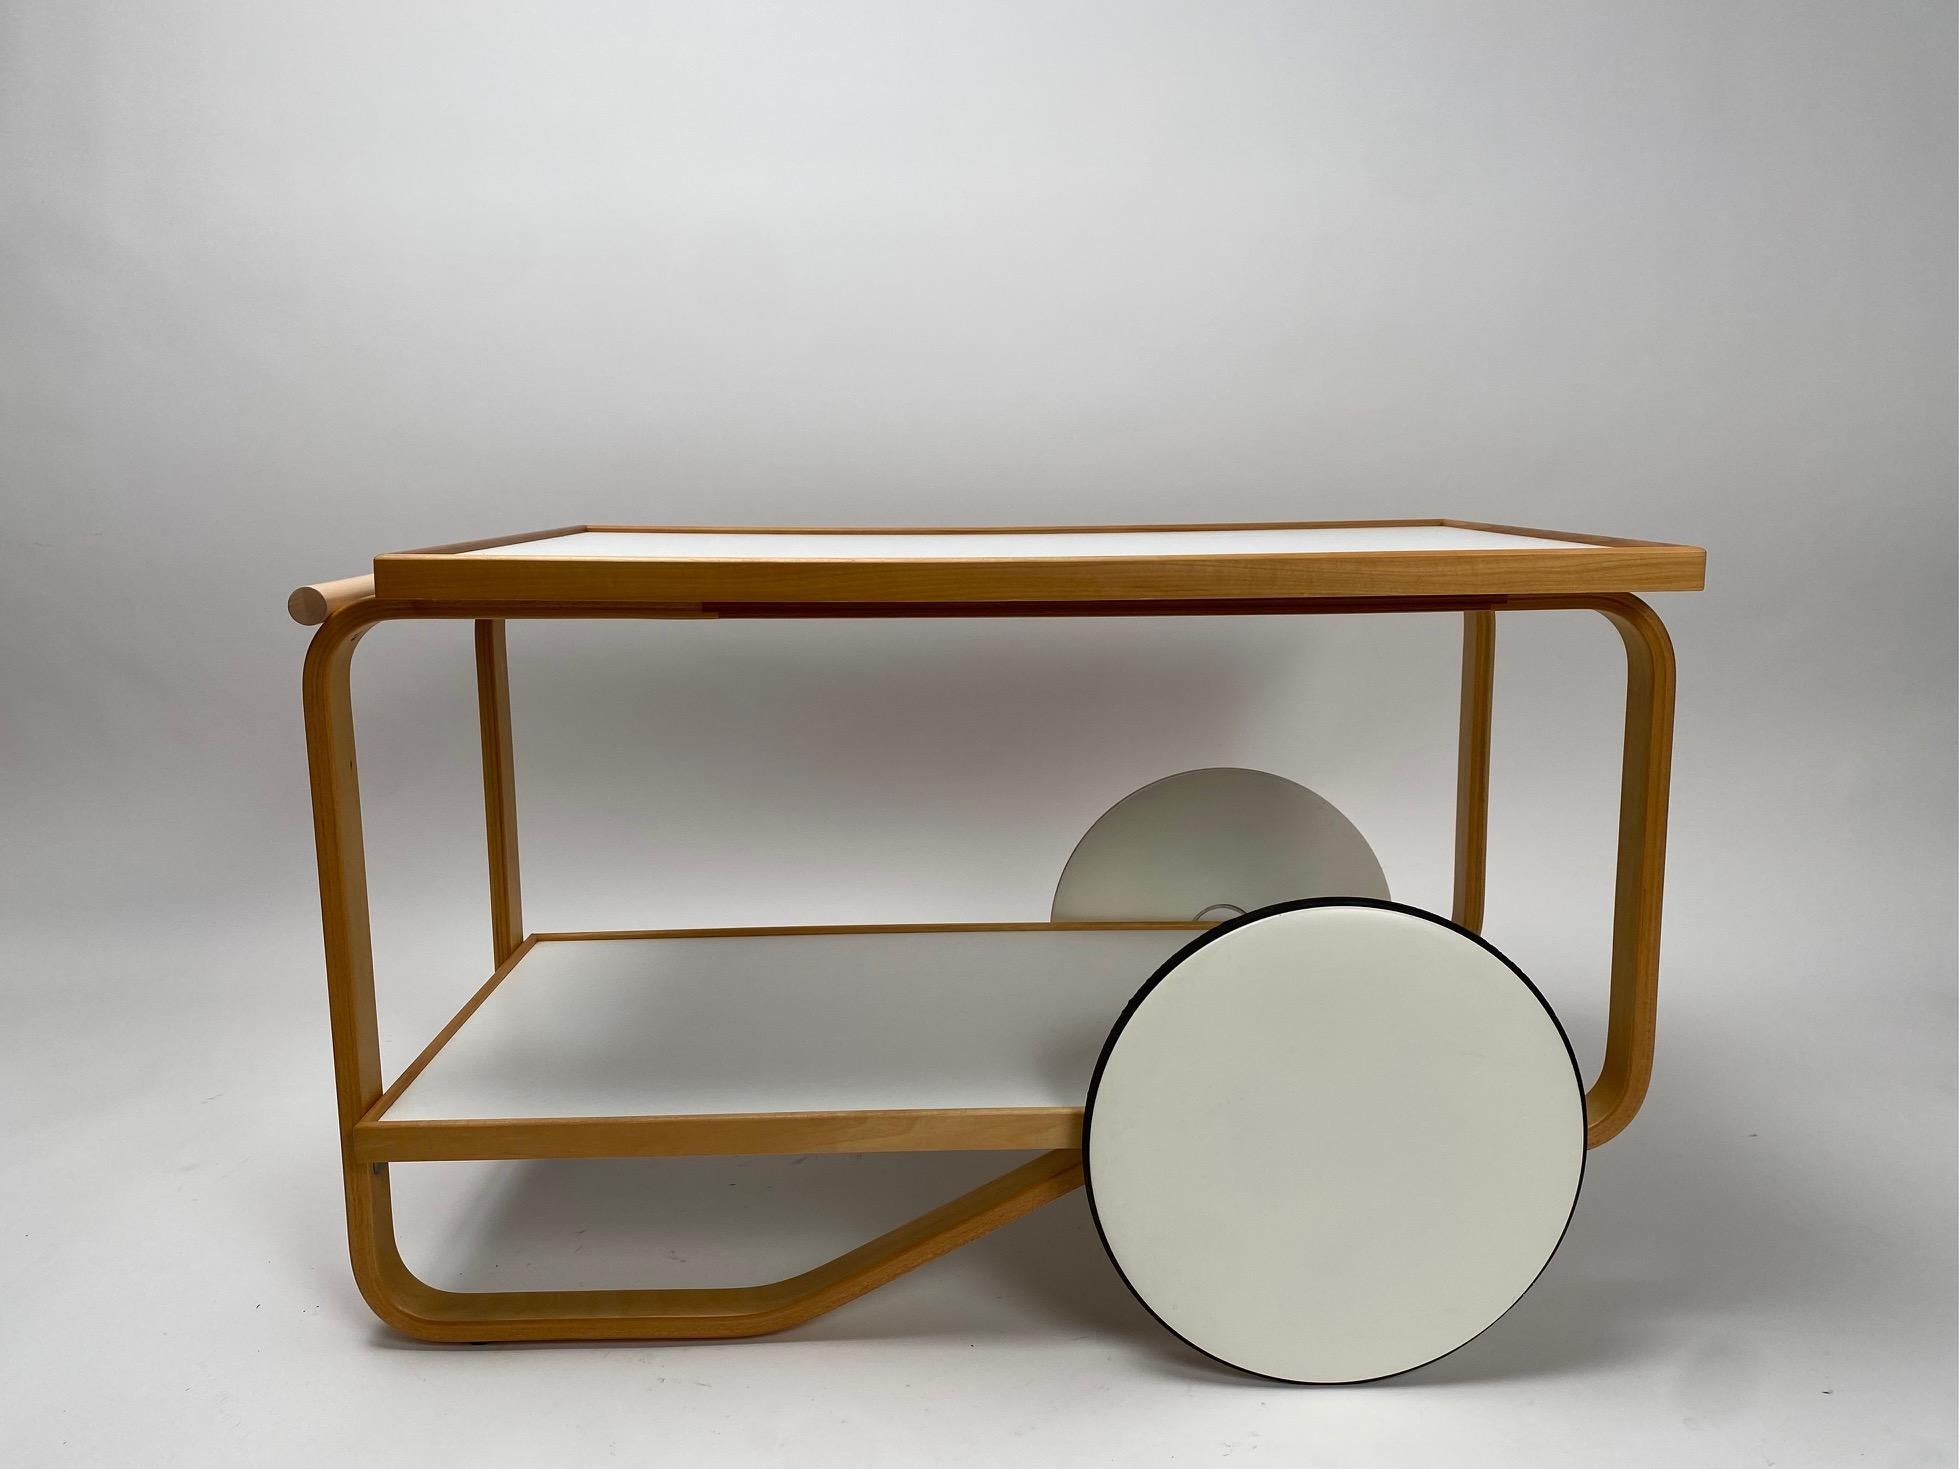 Le chariot 901 d'Alvar Aalto est l'une des icônes du design moderne finlandais, présenté pour la première fois à la Triennale de Milan en 1936.
  Le chariot de bar ou de thé est doté d'un cadre en bois de bouleau et de plateaux recouverts de